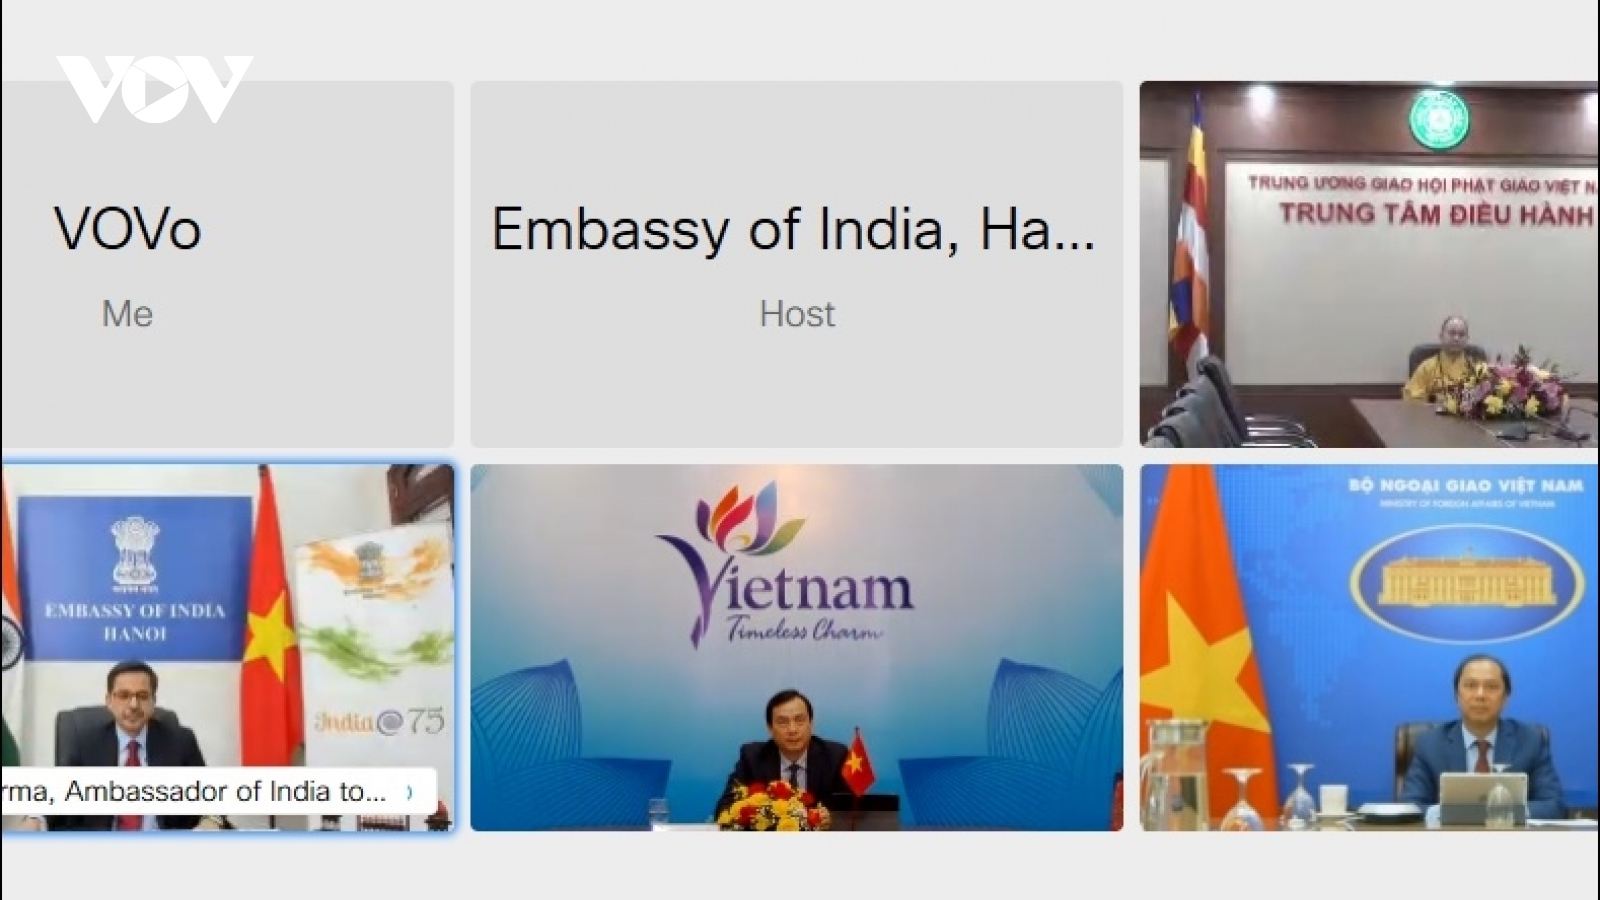 Ấn Độ coi Việt Nam là đối tác tin cậy trong hành trình của mình